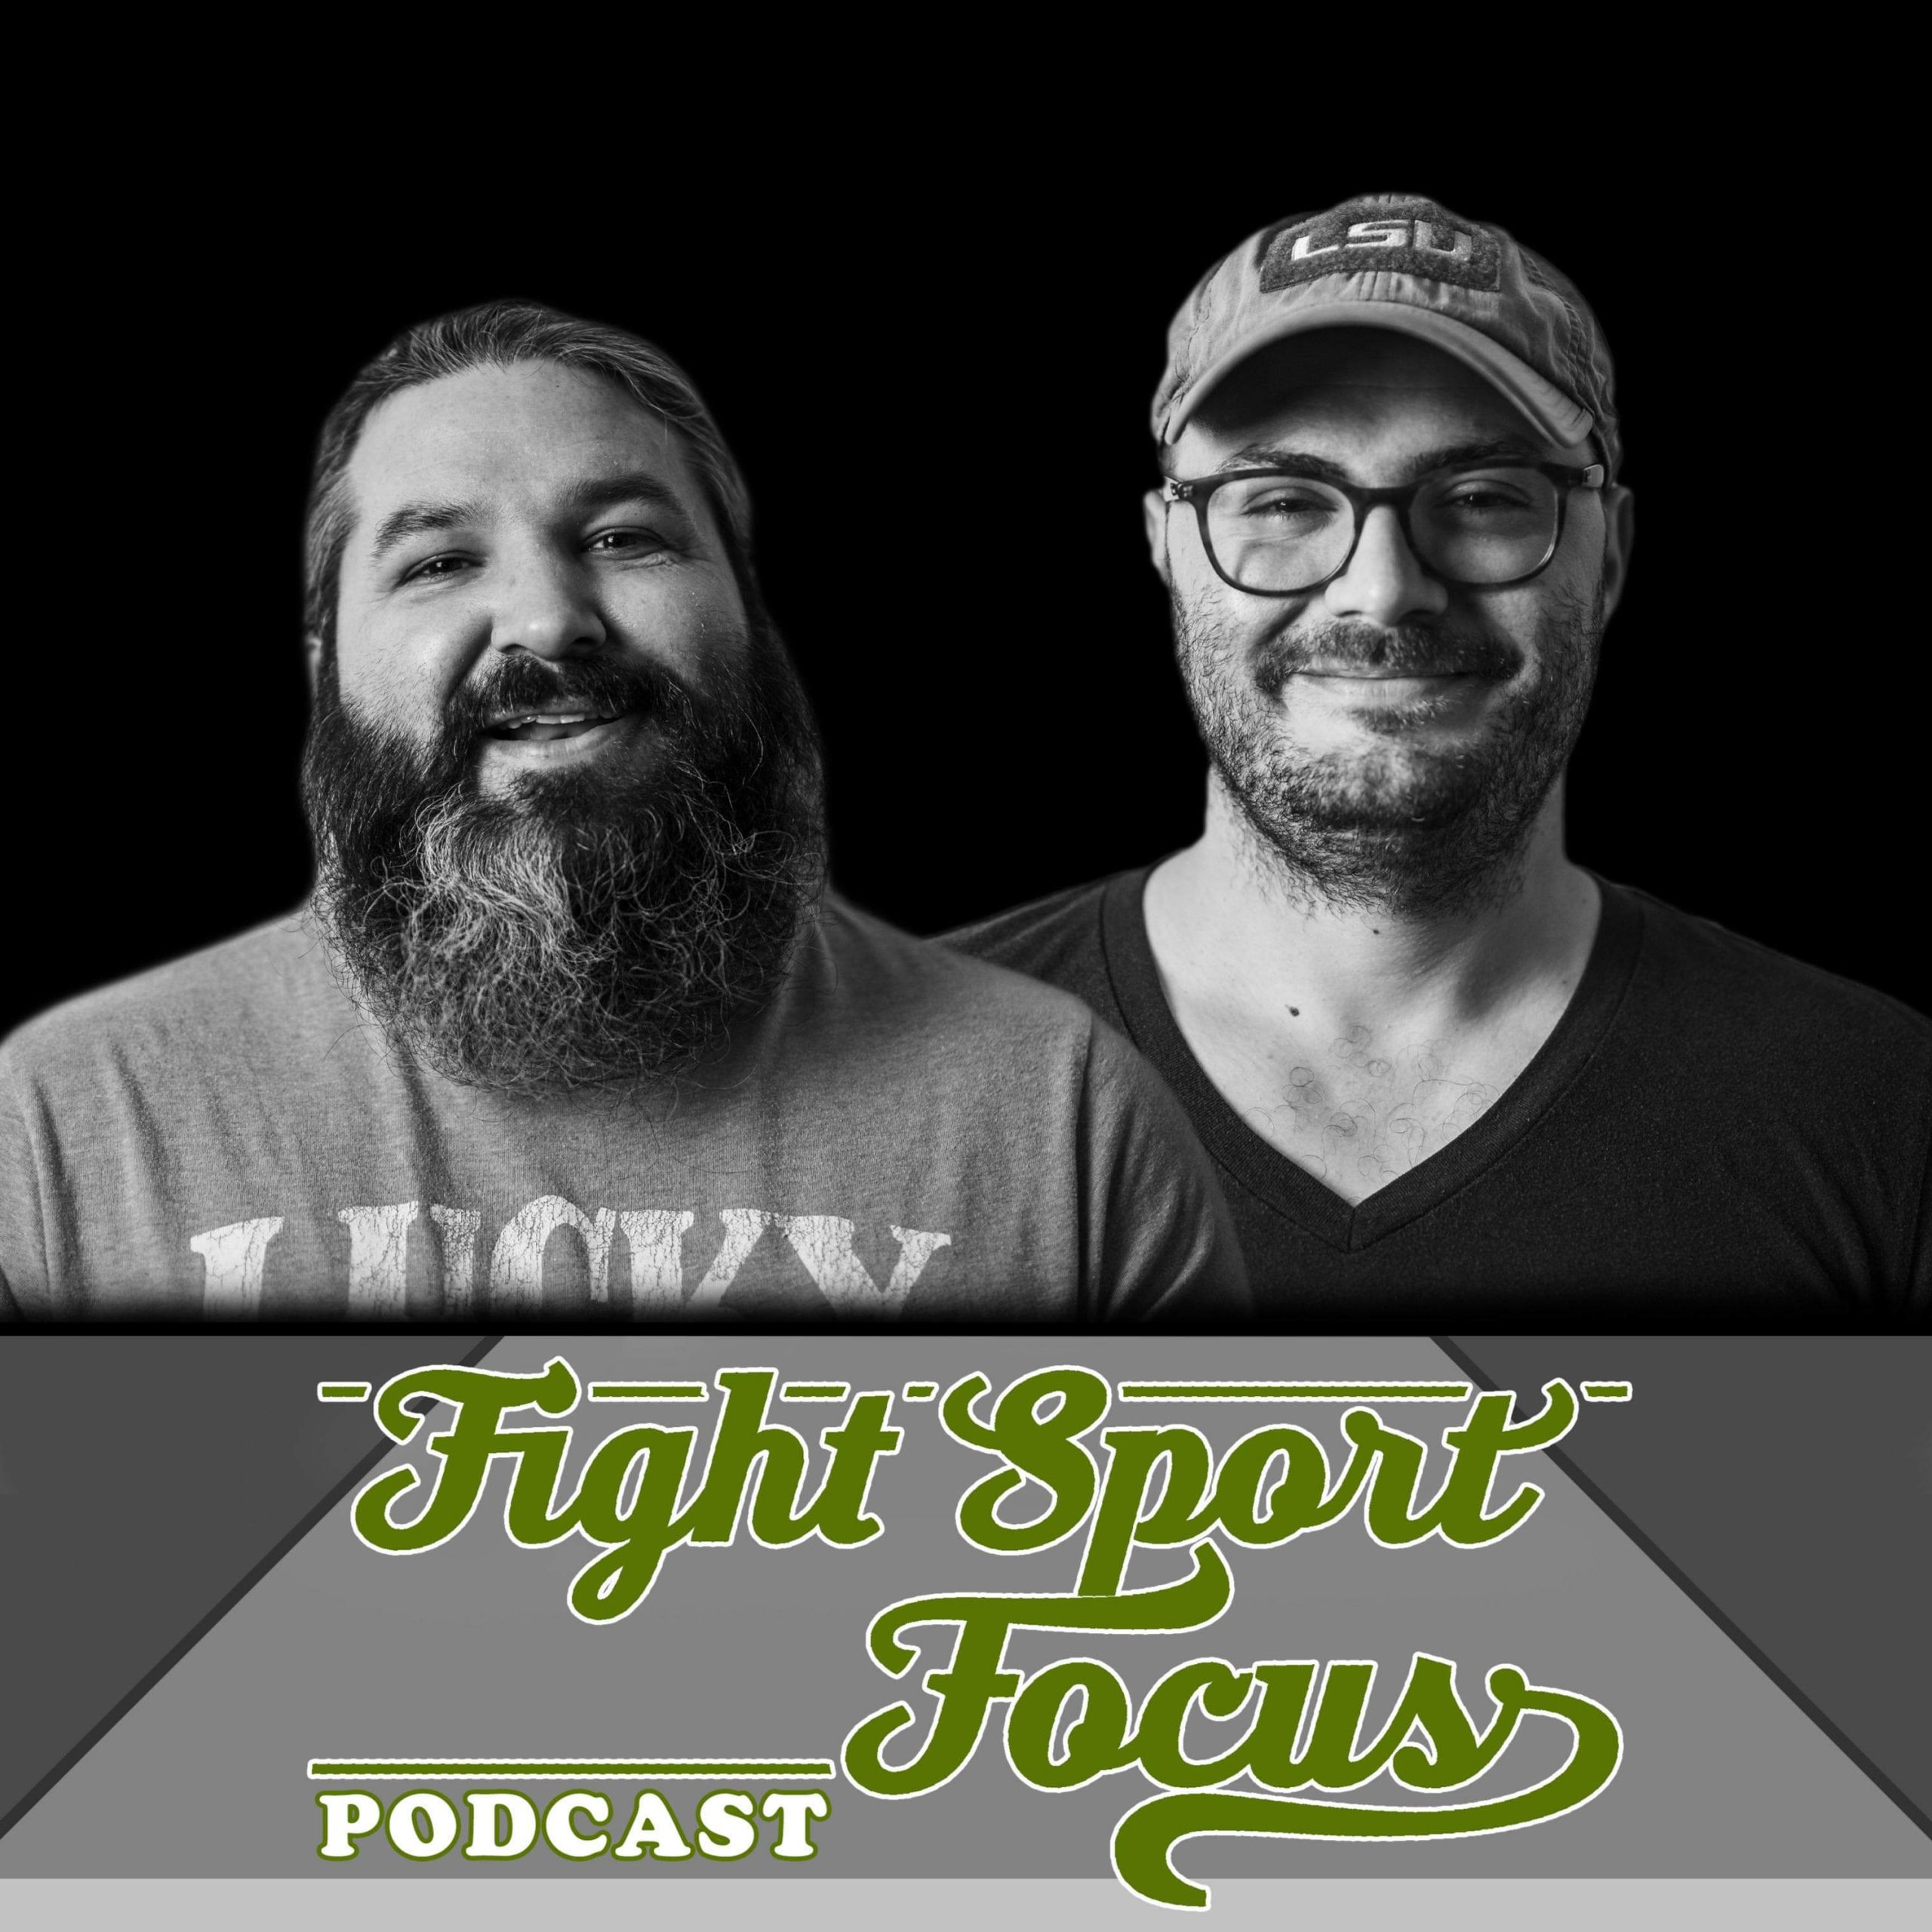 Fight Sport Focus